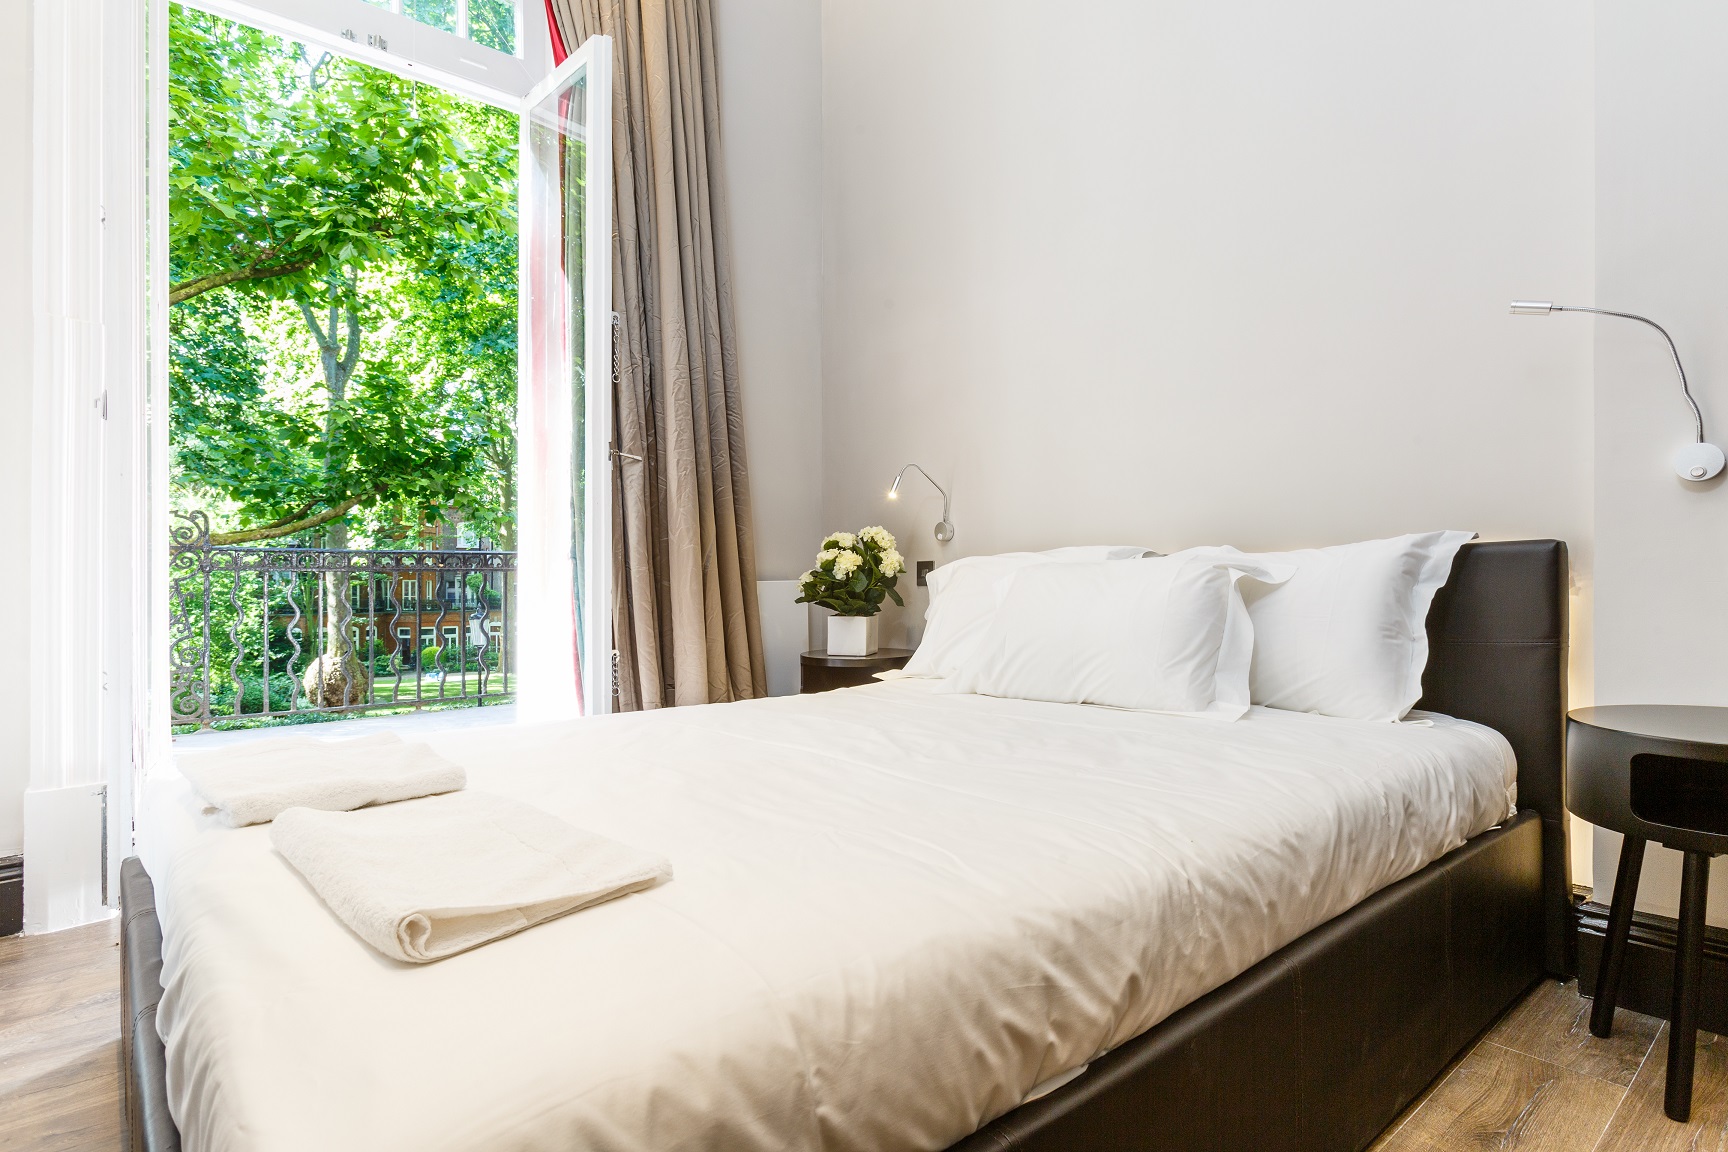 Lovelydays luxury service apartment rental - Kensington - Bramham Gardens - Lovelysuite - 3 bedrooms - 2 bathrooms - Single bed - 596b9d689a0f - Lovelydays